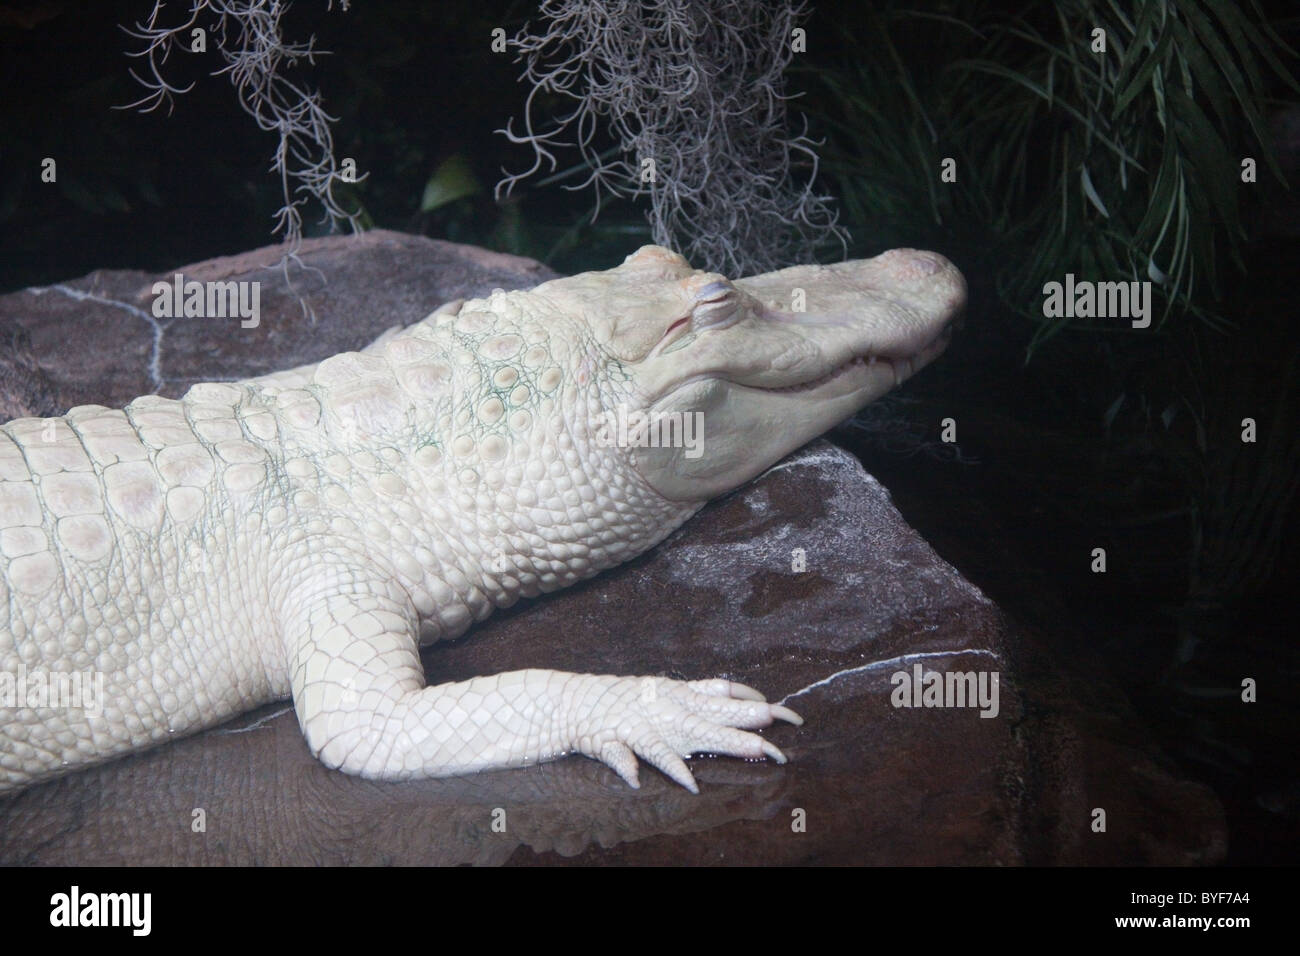 Albino alligator at the Georgia Aquarium, Atlanta Stock Photo